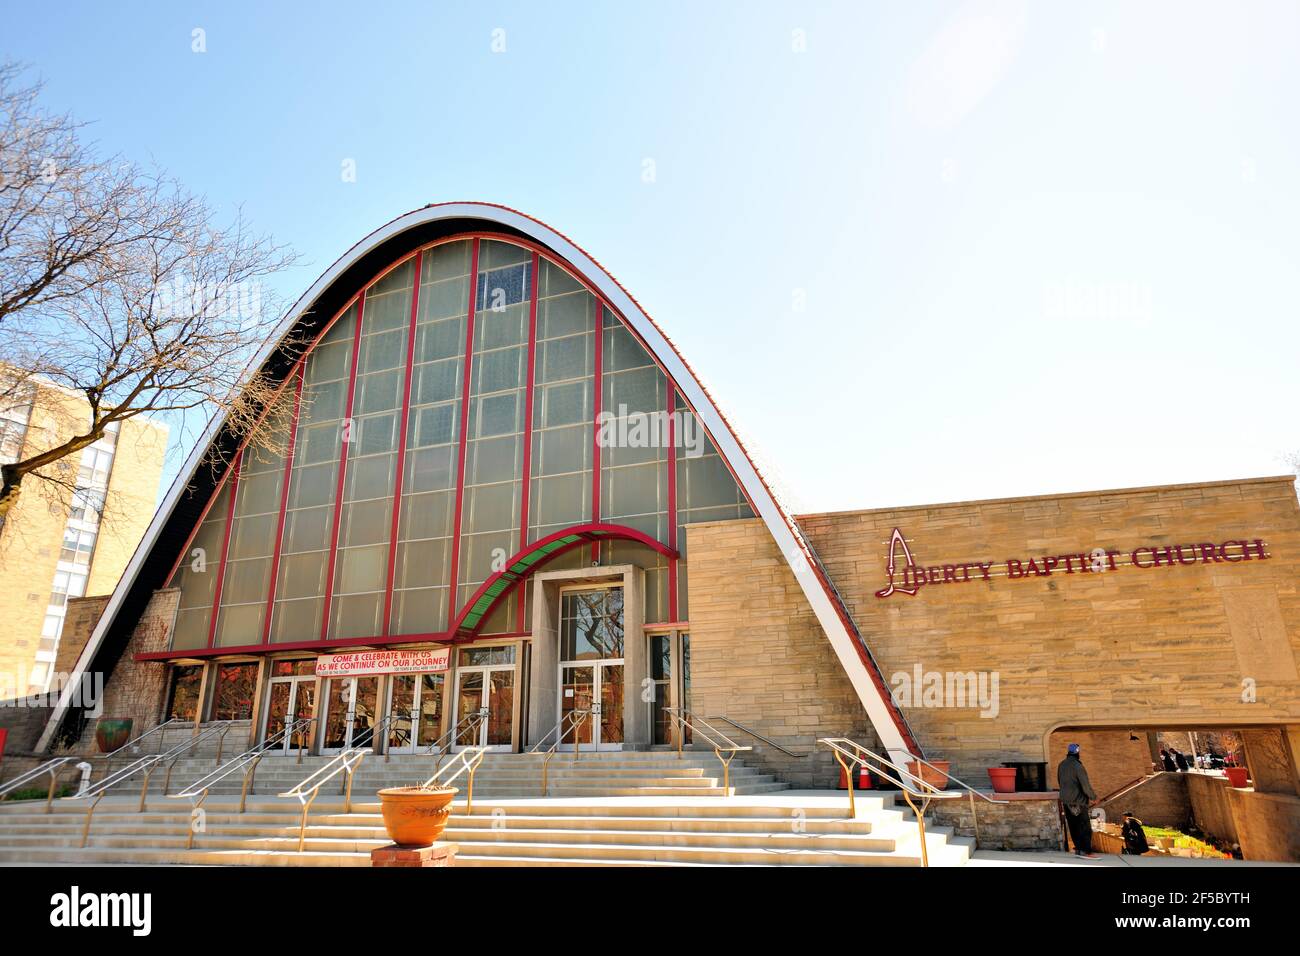 Chicago, Illinois, USA. Liberty Baptist Church, seit 1918 fester Bestandteil des Viertels Bronzeville das heutige Kirchengebäude stammt aus den 1950er Jahren. Stockfoto